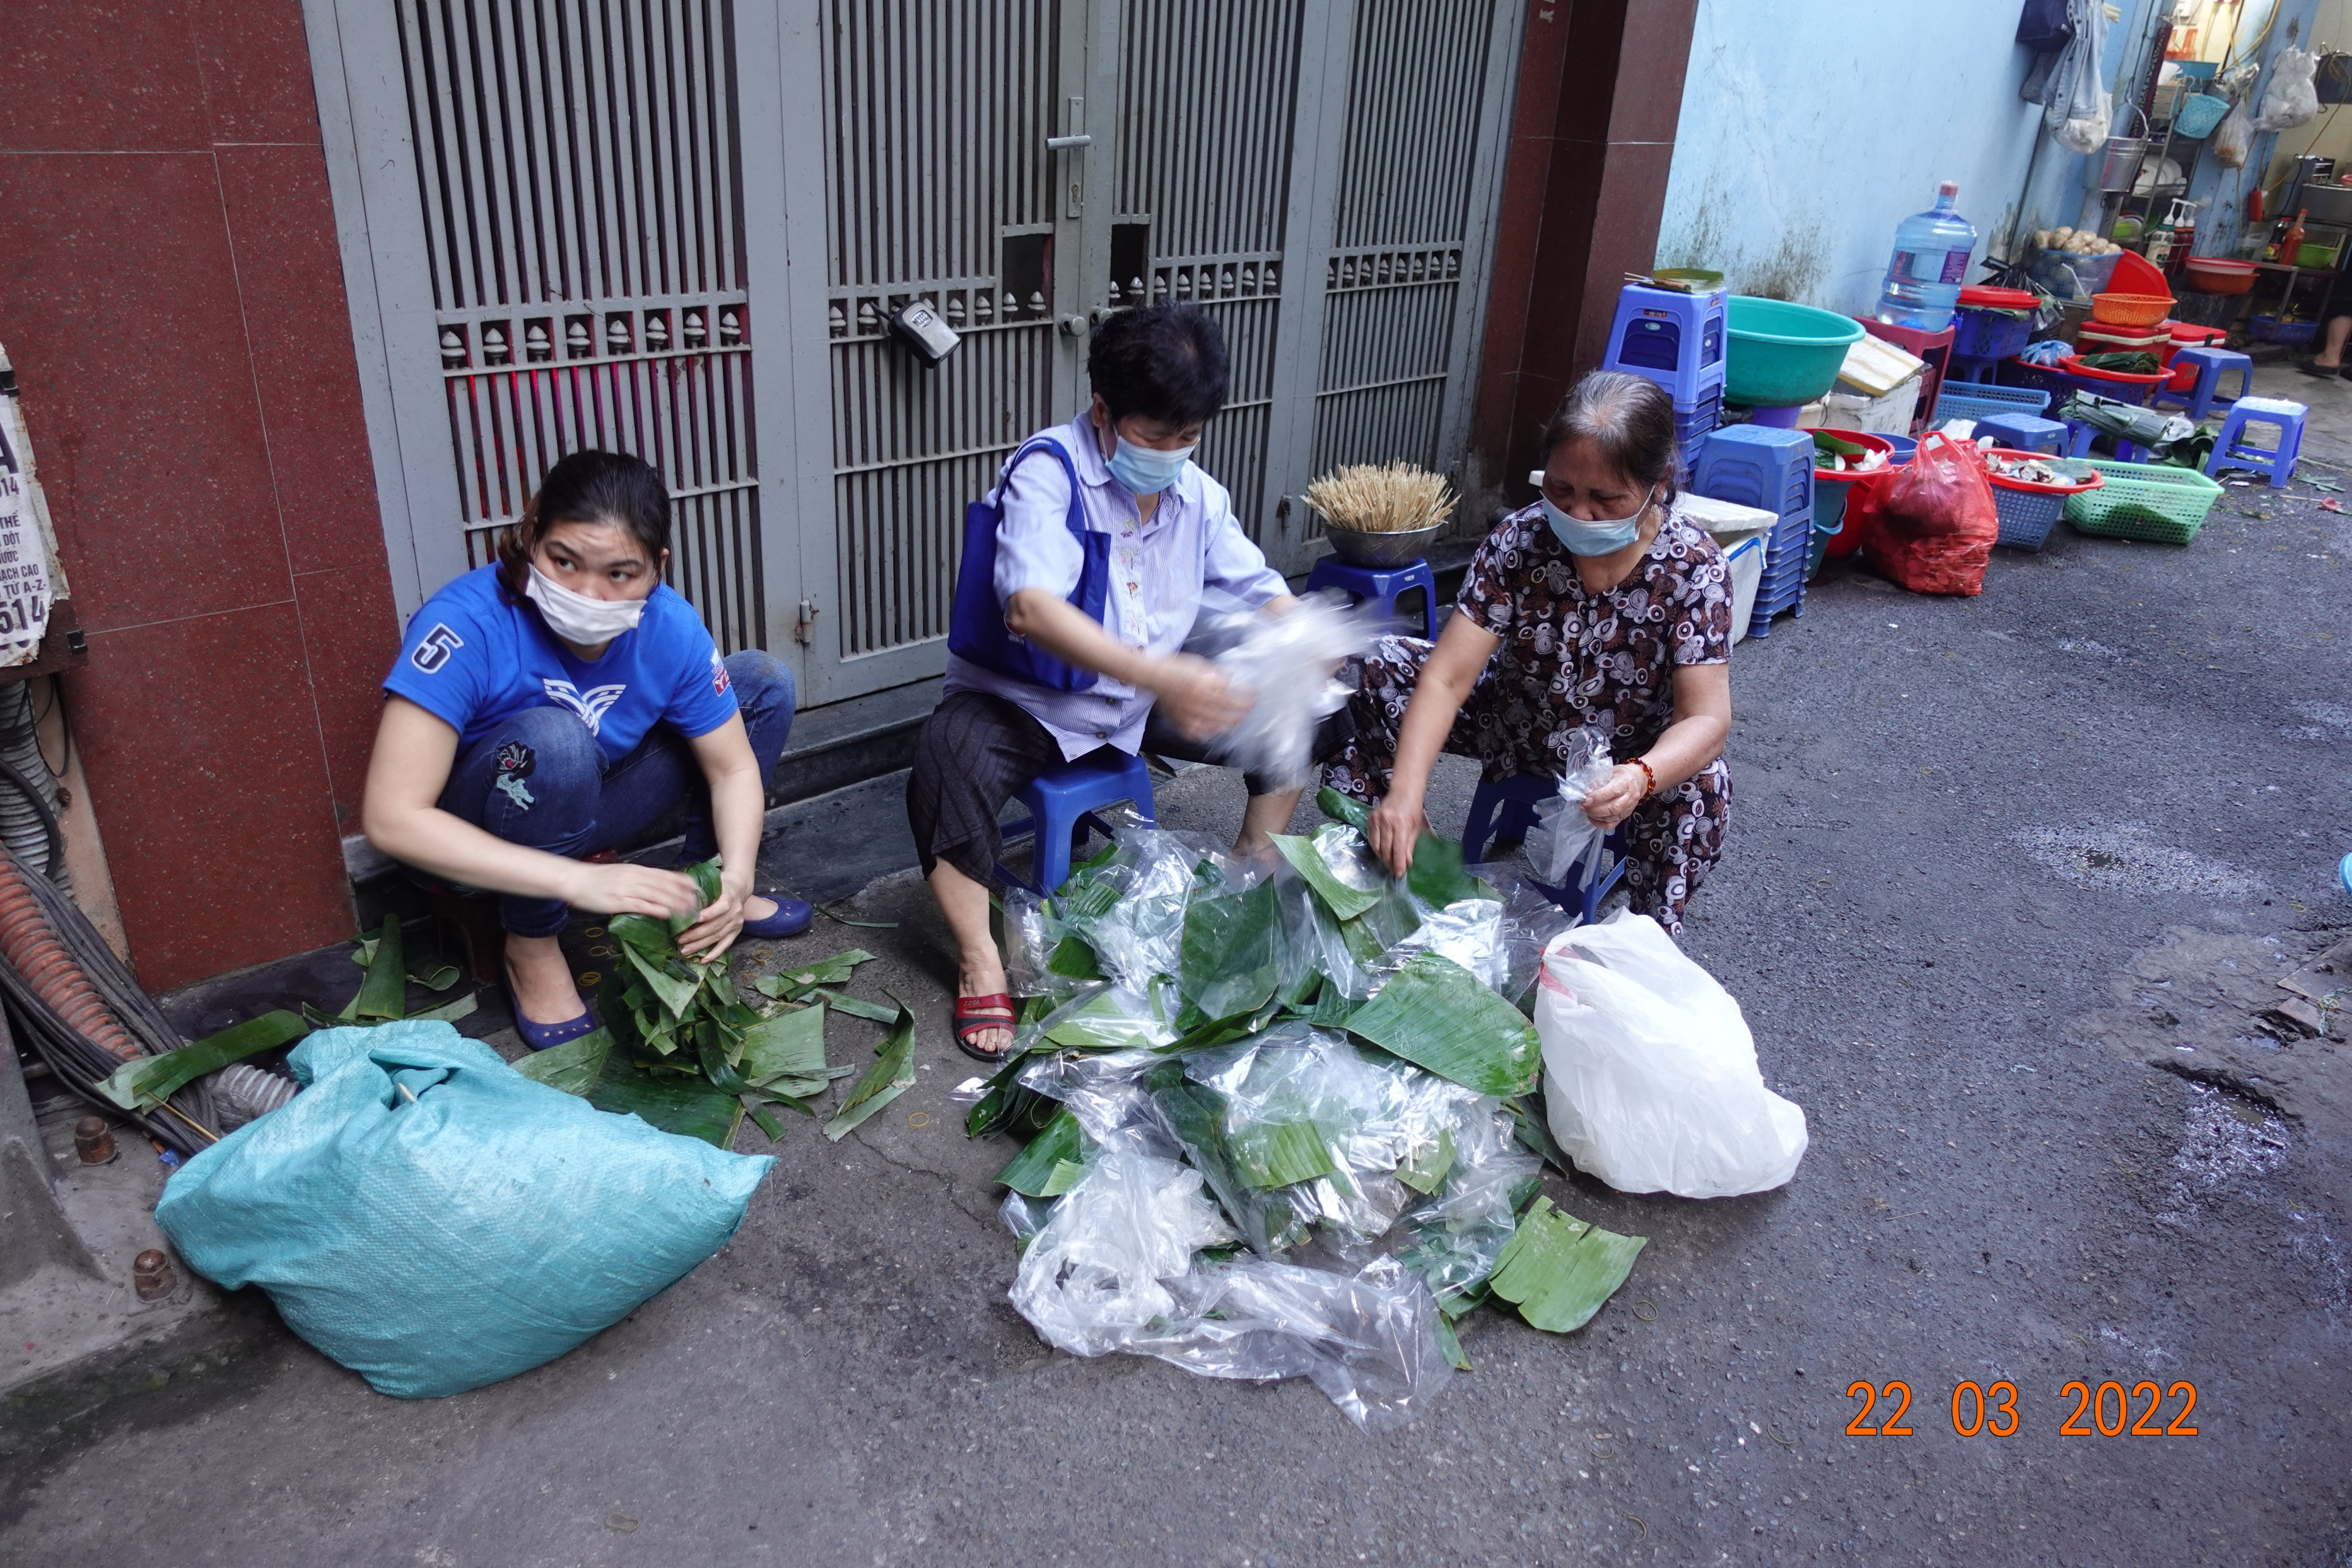 Phường đầu tiên ở Hà Nội phân loại rác trước khi nghị định xử phạt có hiệu lực